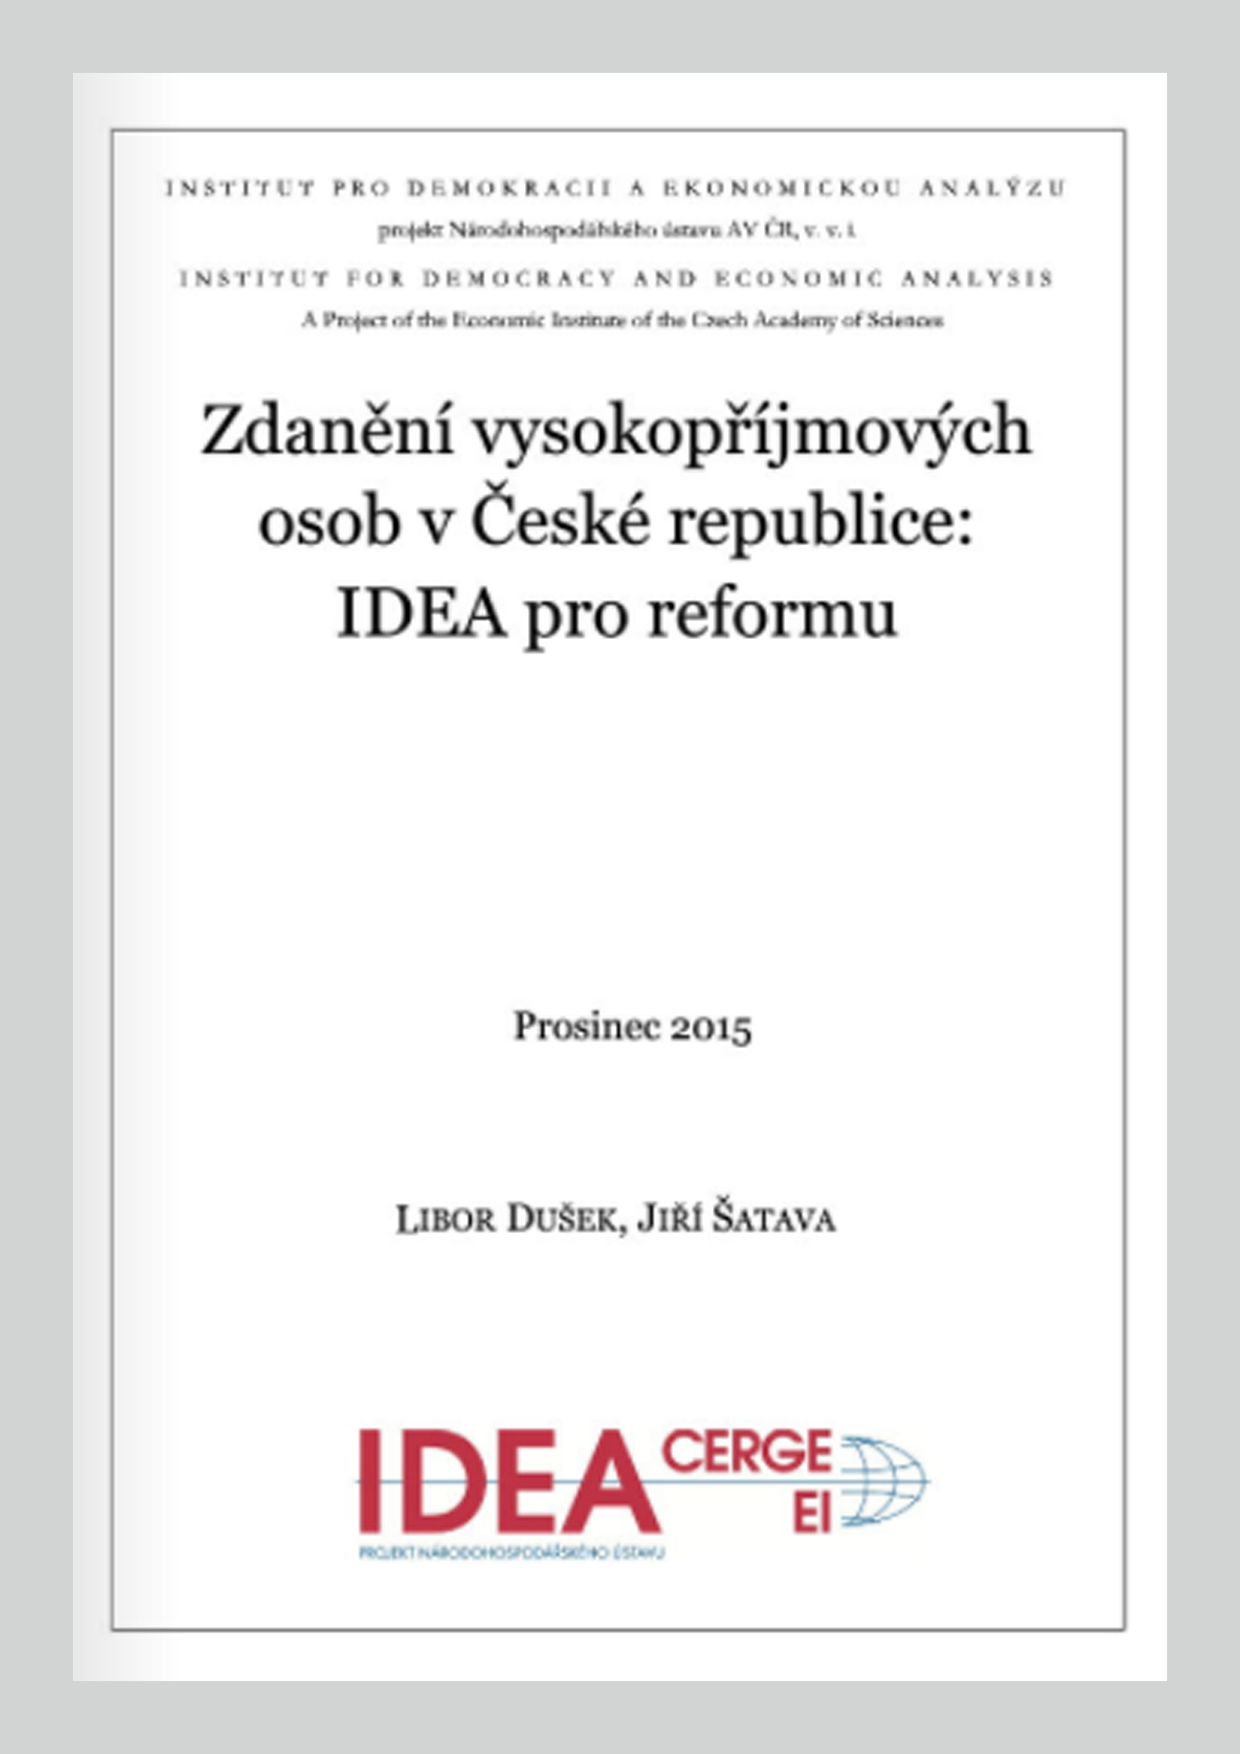 Zdanění vysokopříjmových osob v České republice: IDEA pro reformu